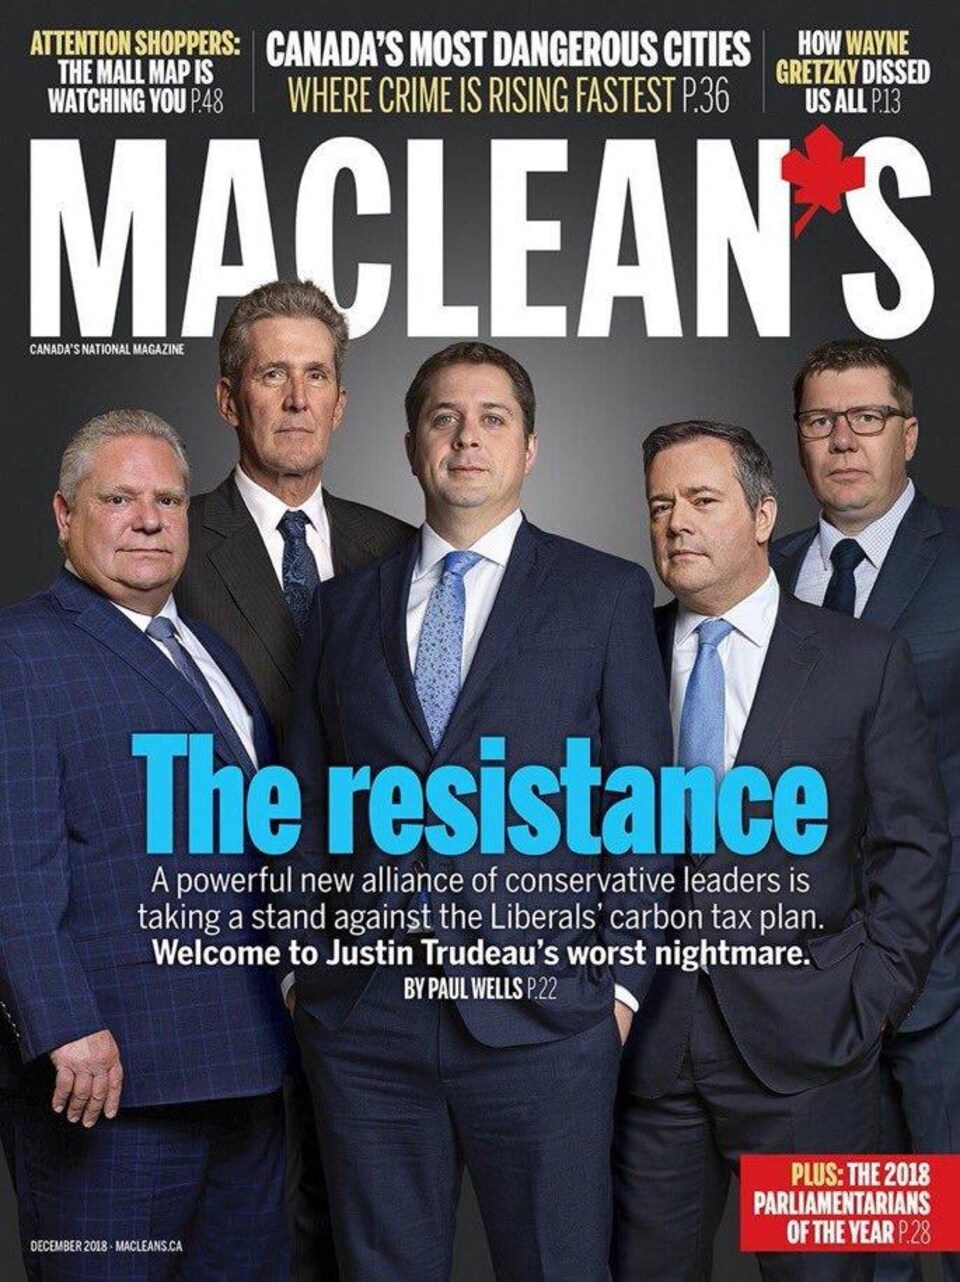 La page couverture du magazine Maclean's, où figurent des leaders conservateurs.